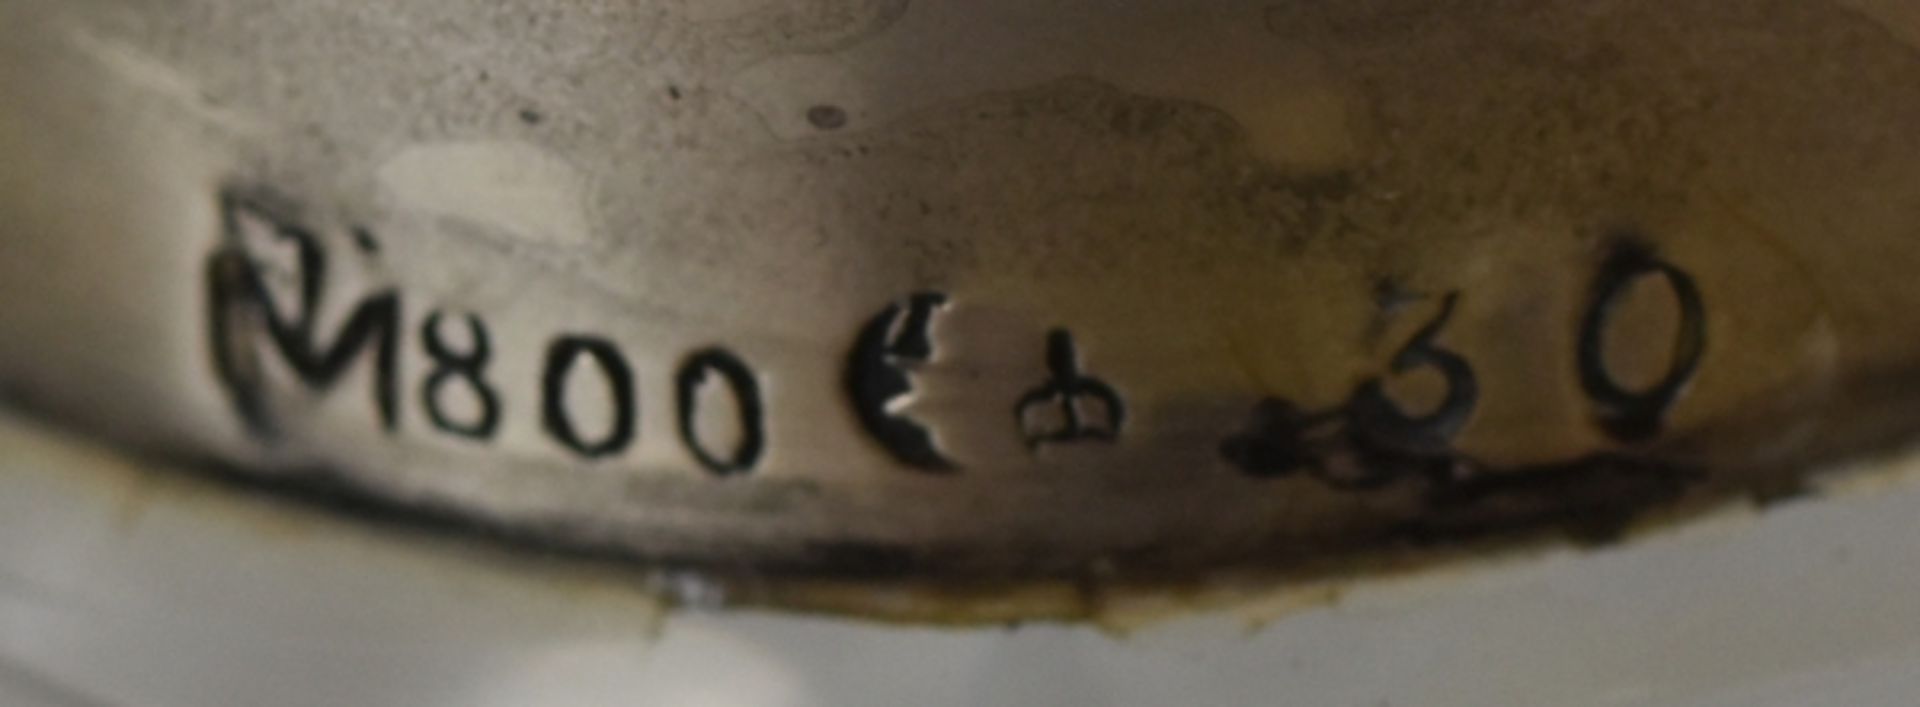 WHISKY-KARAFFE Zylinderform mit Schliffdekor, Manchette Silber 800, H 24,5cm- - -23.00 % buyer's - Bild 3 aus 3